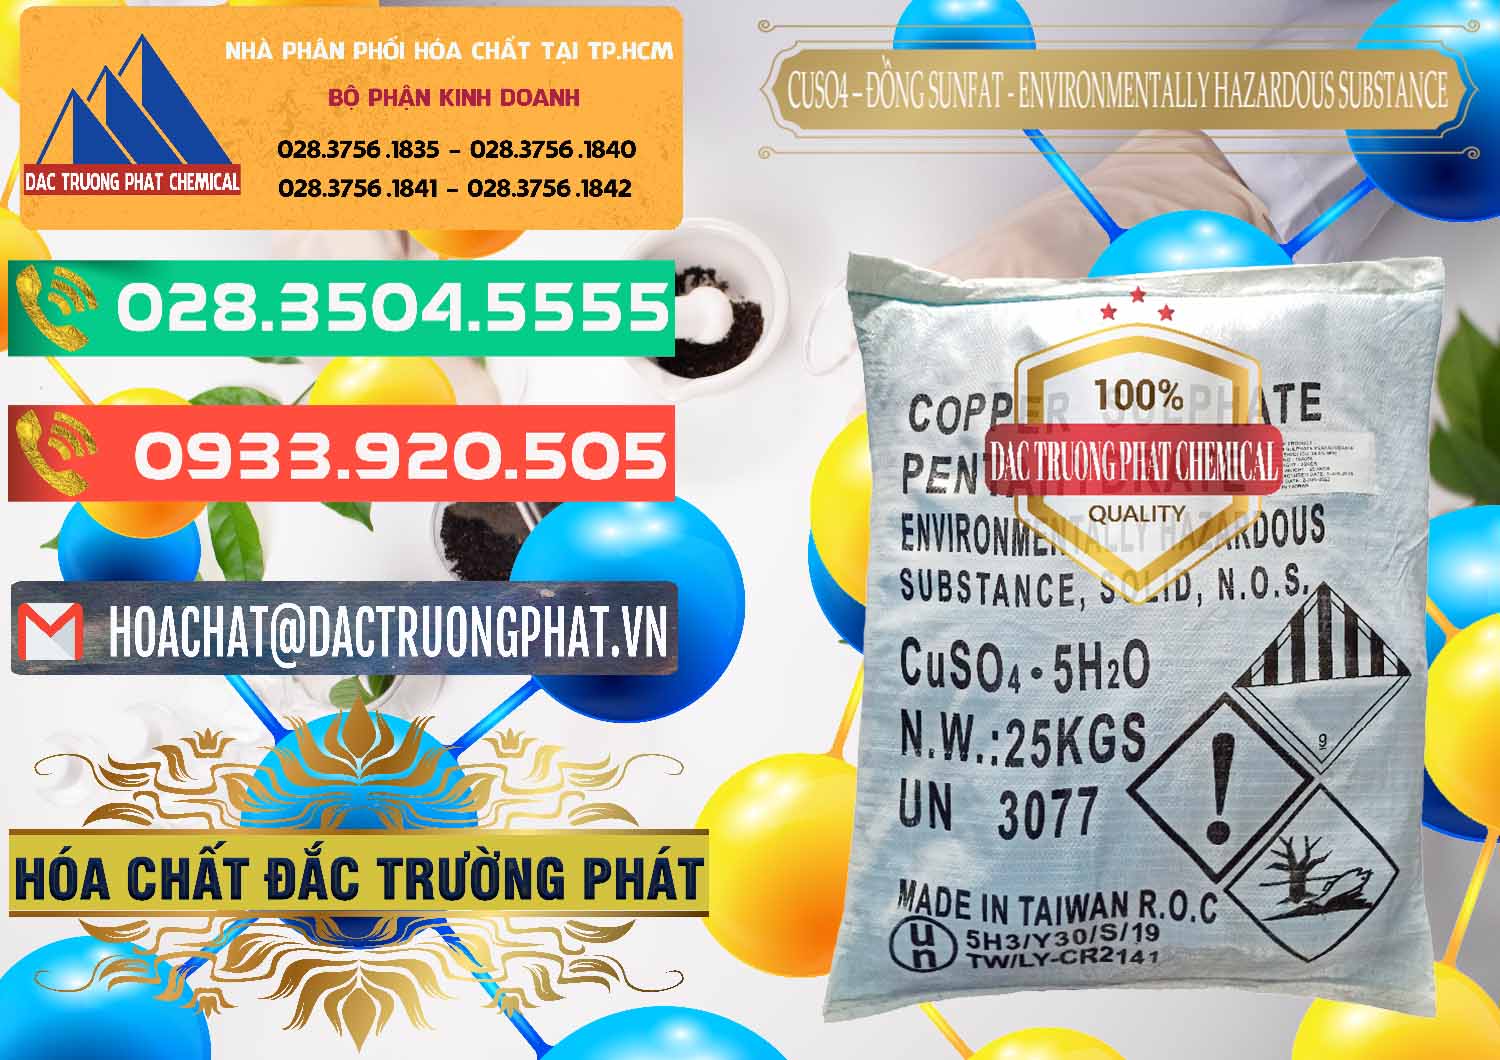 Cty chuyên bán và phân phối CuSO4 – Đồng Sunfat Đài Loan Taiwan - 0059 - Nơi chuyên cung cấp và nhập khẩu hóa chất tại TP.HCM - congtyhoachat.com.vn